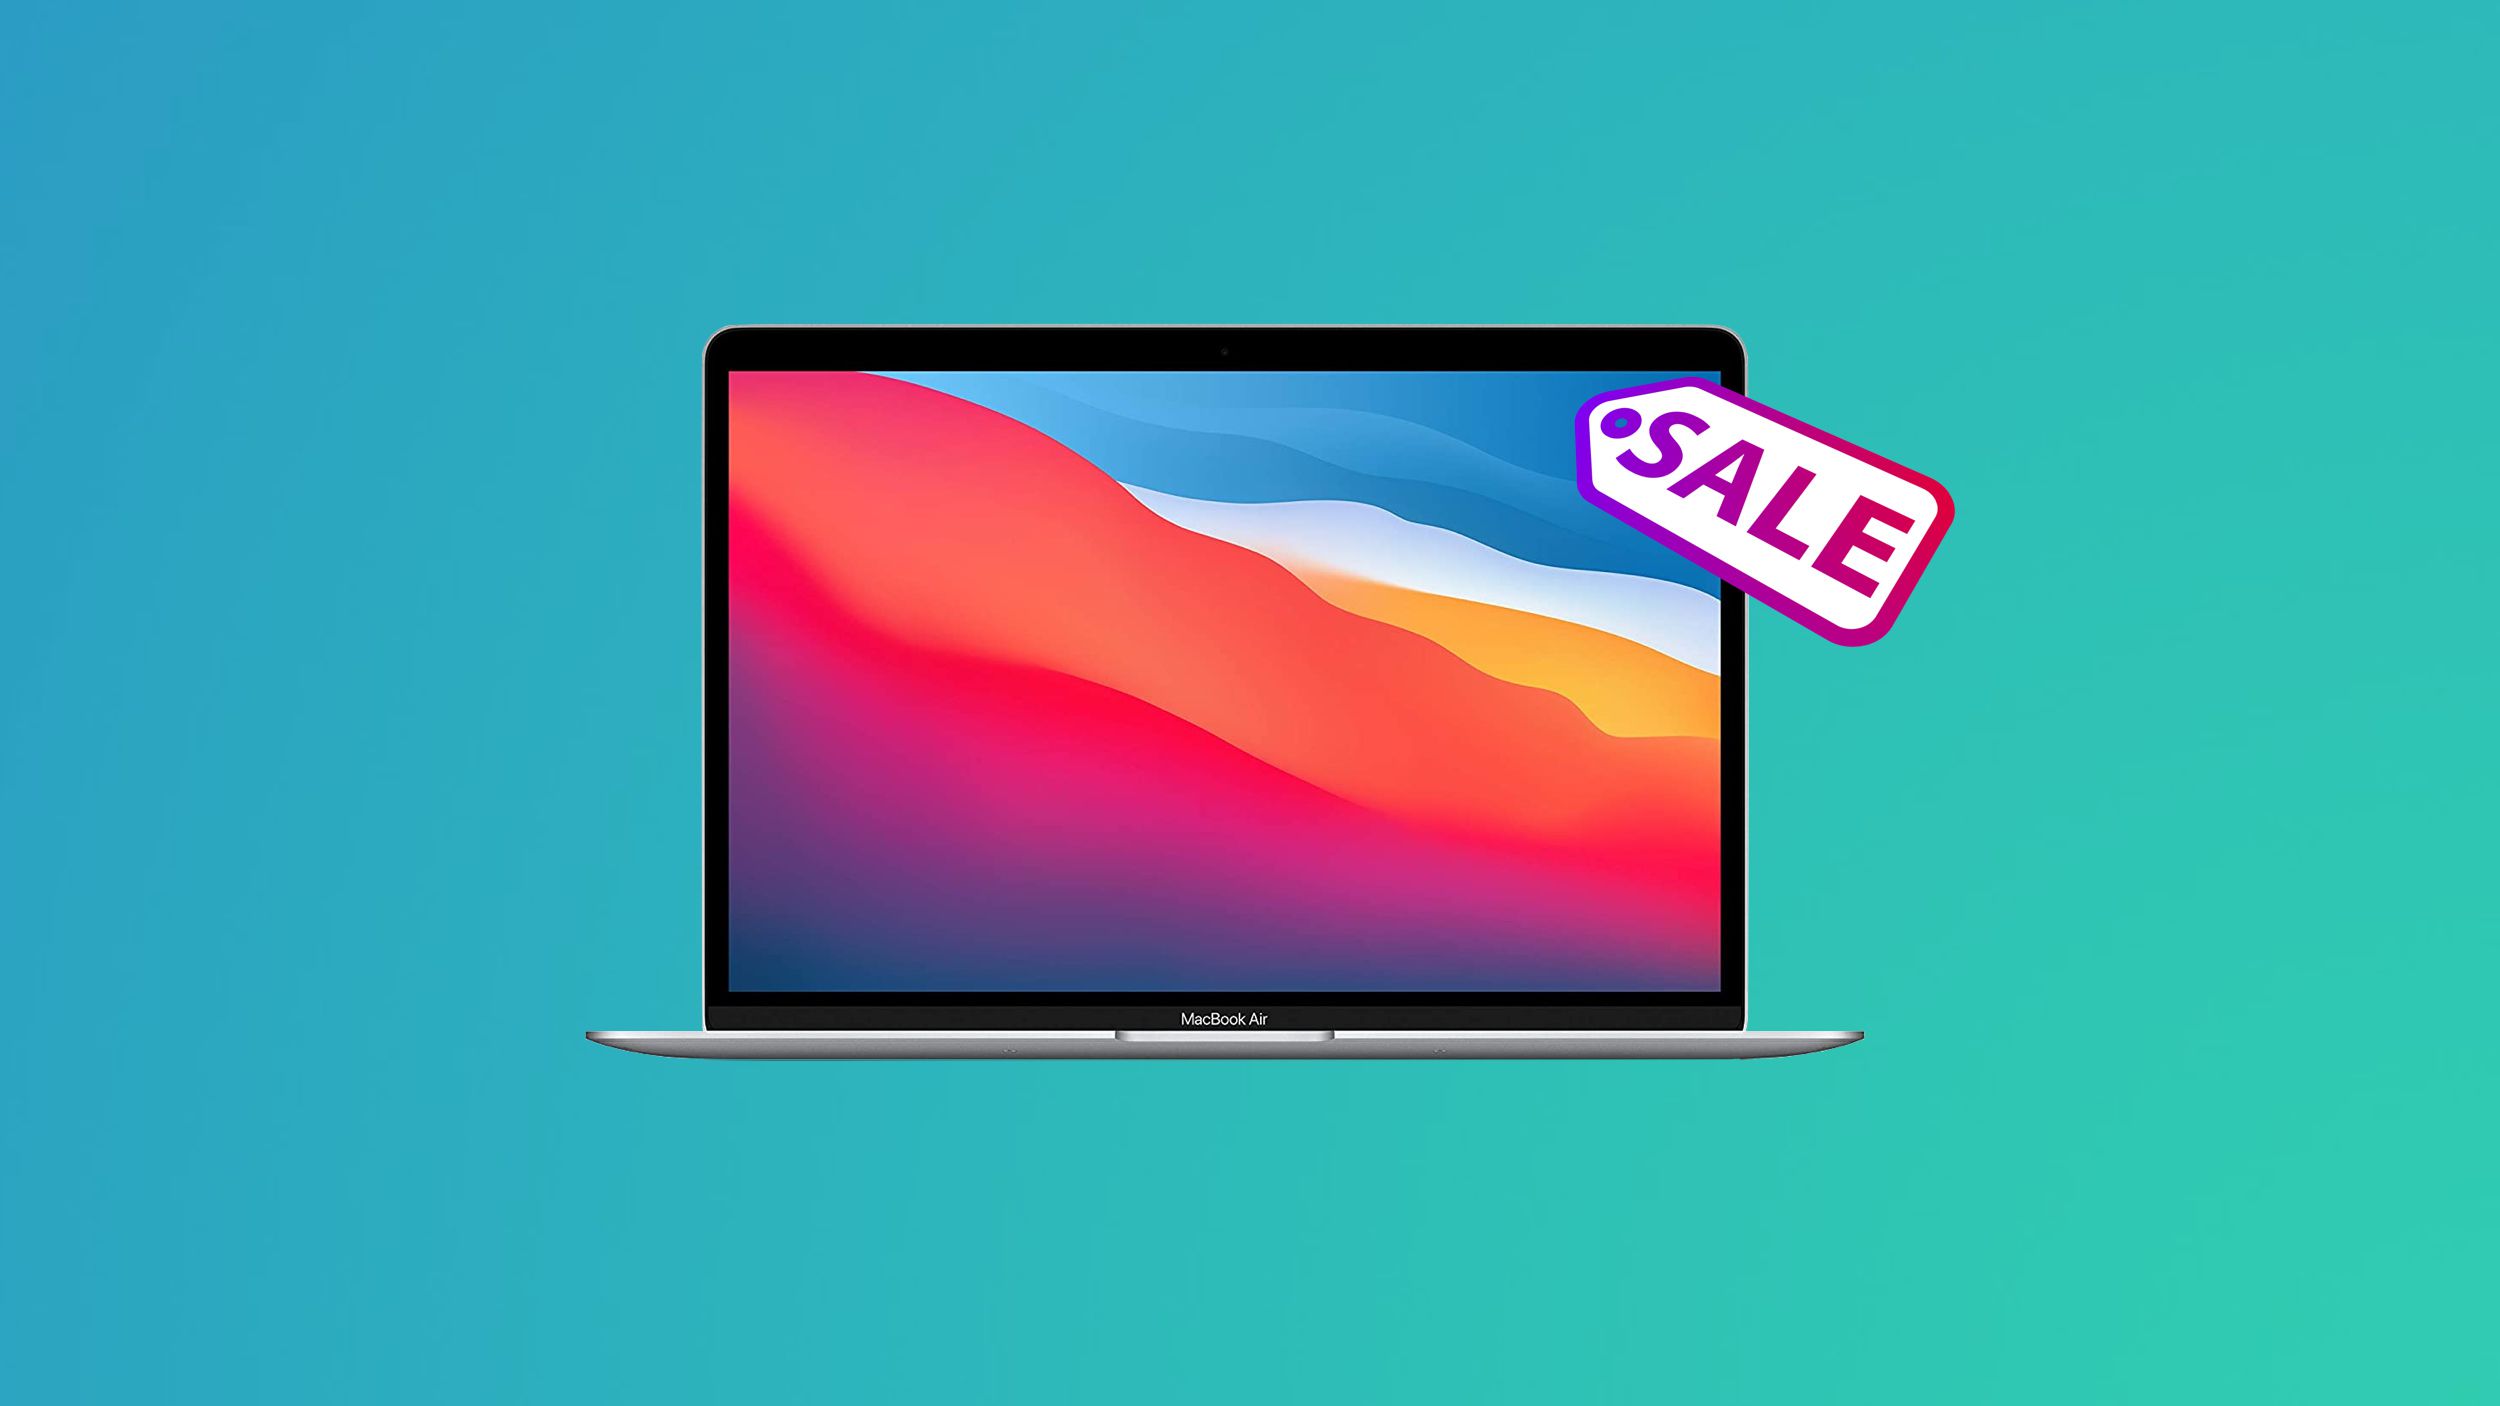 macbook 2018 release date does macbook get cheaper